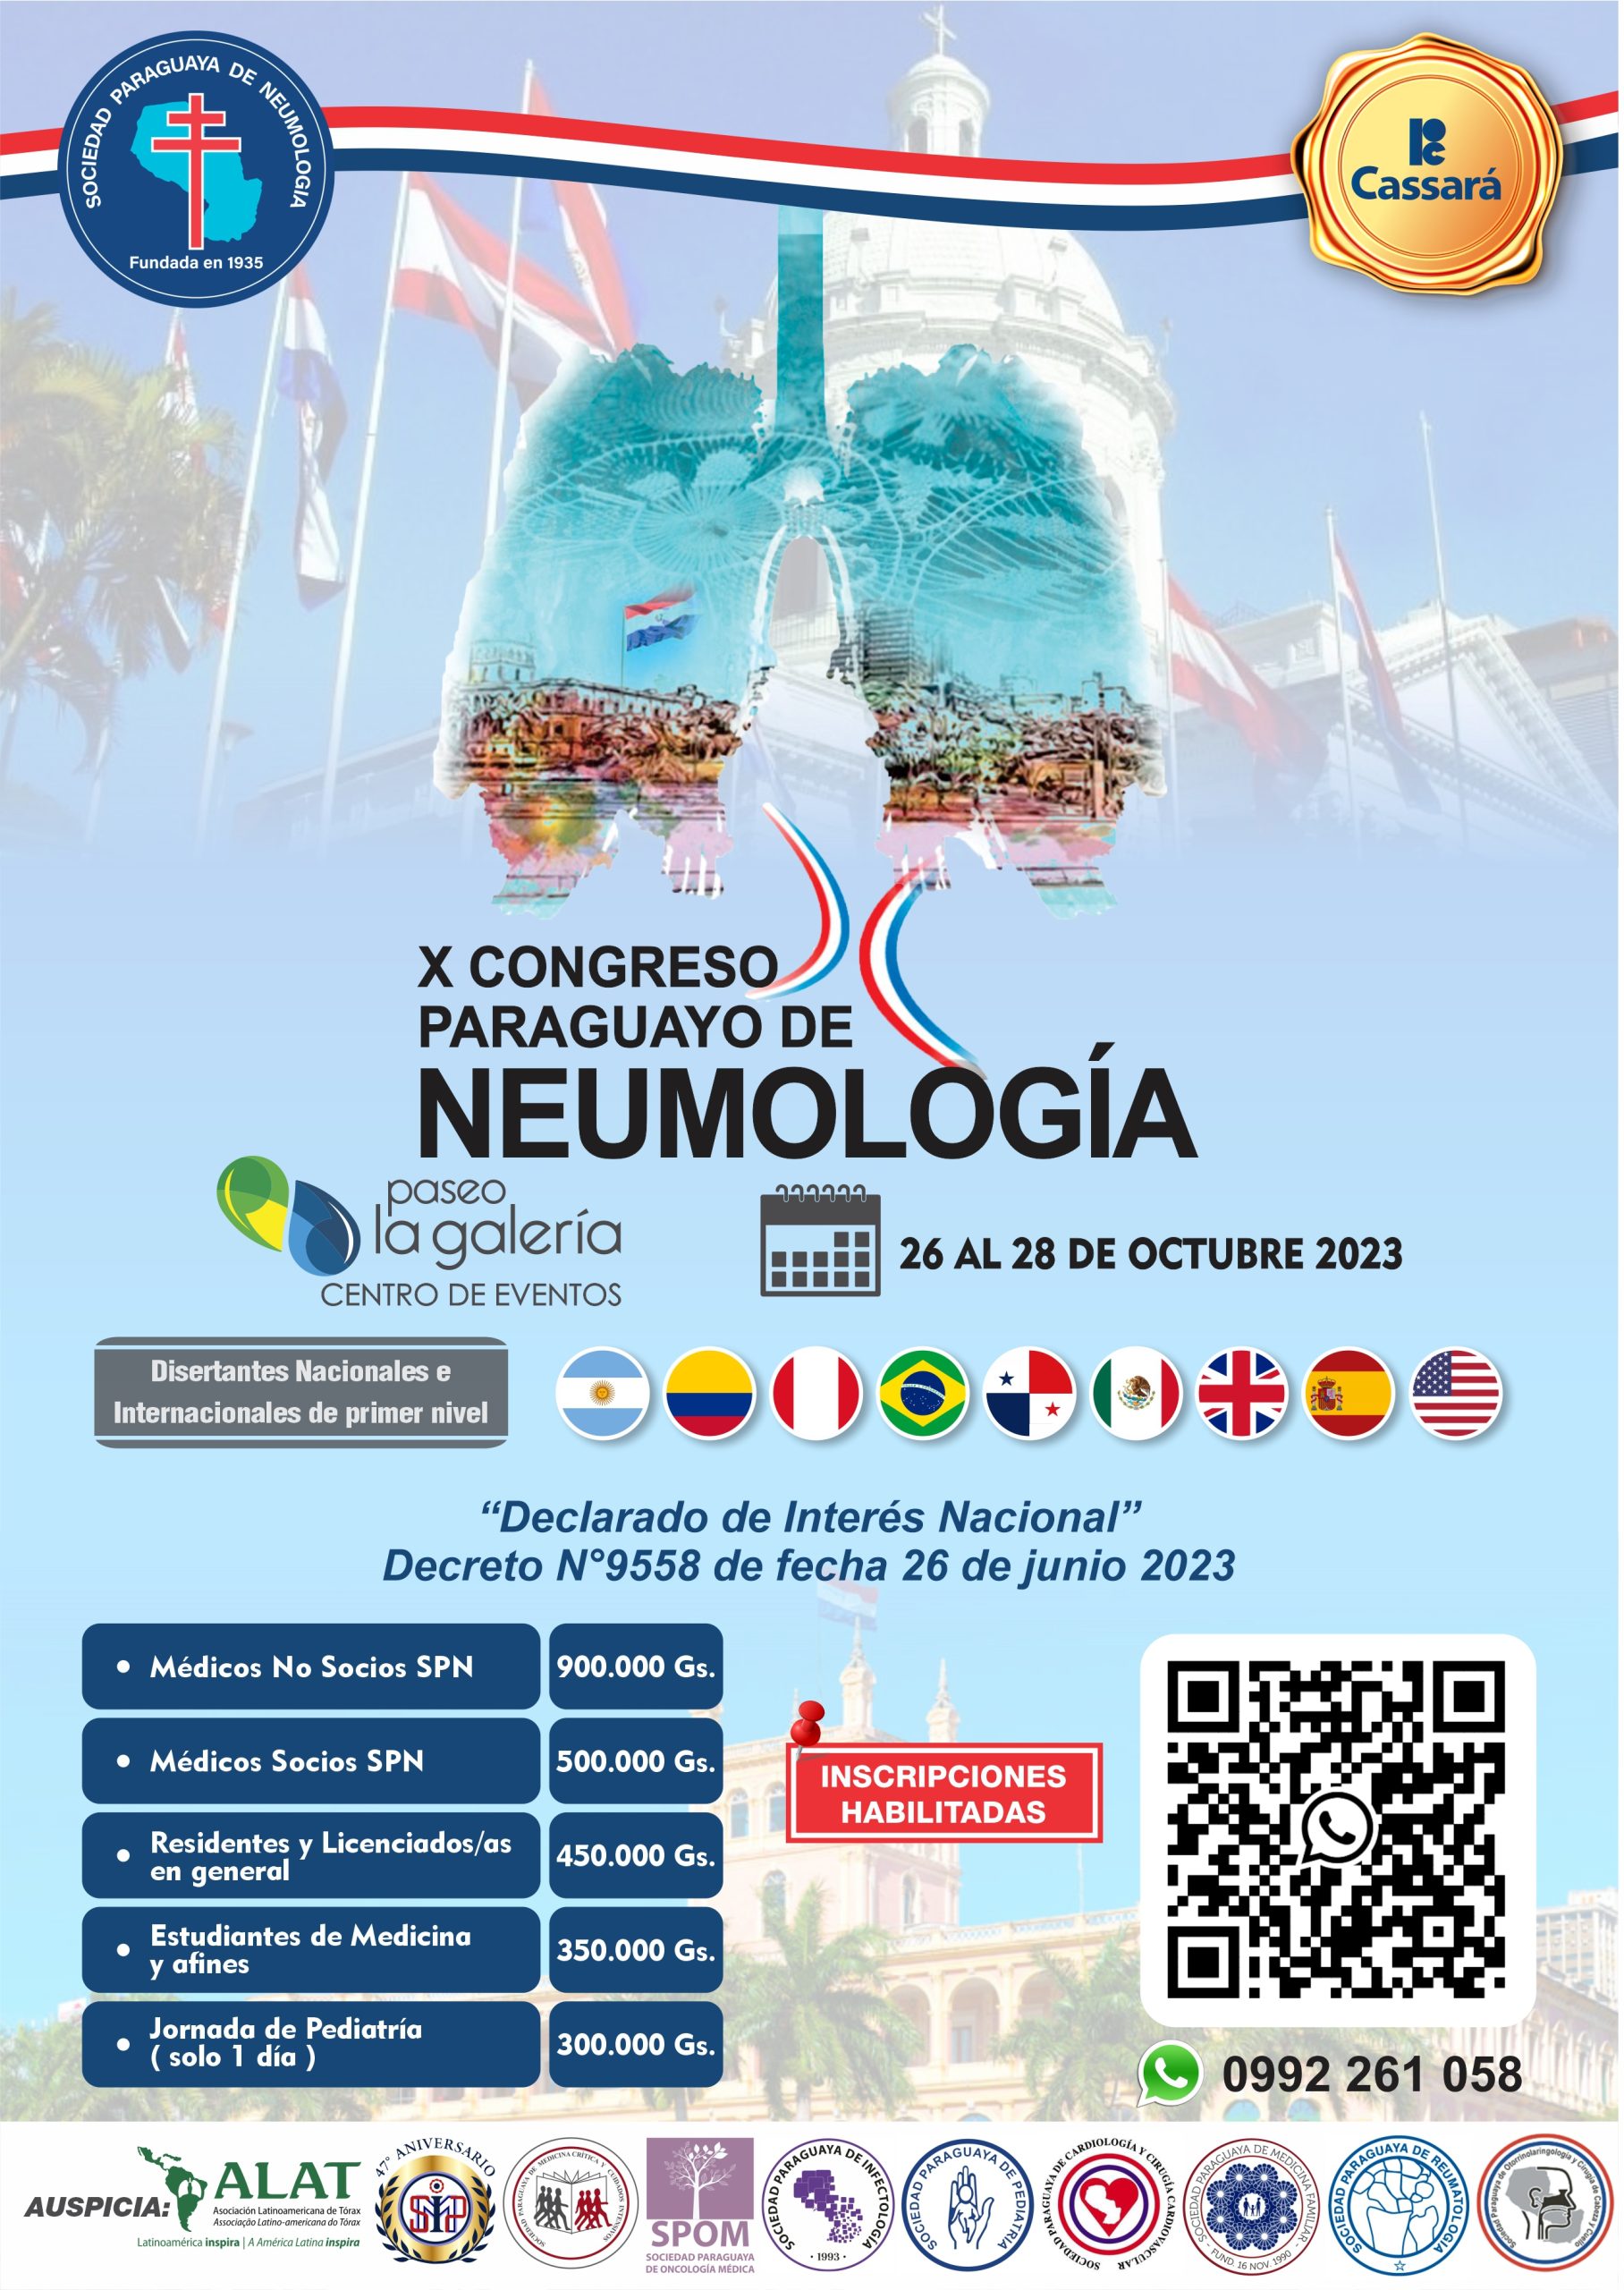 X Congreso Paraguayo de Neumología